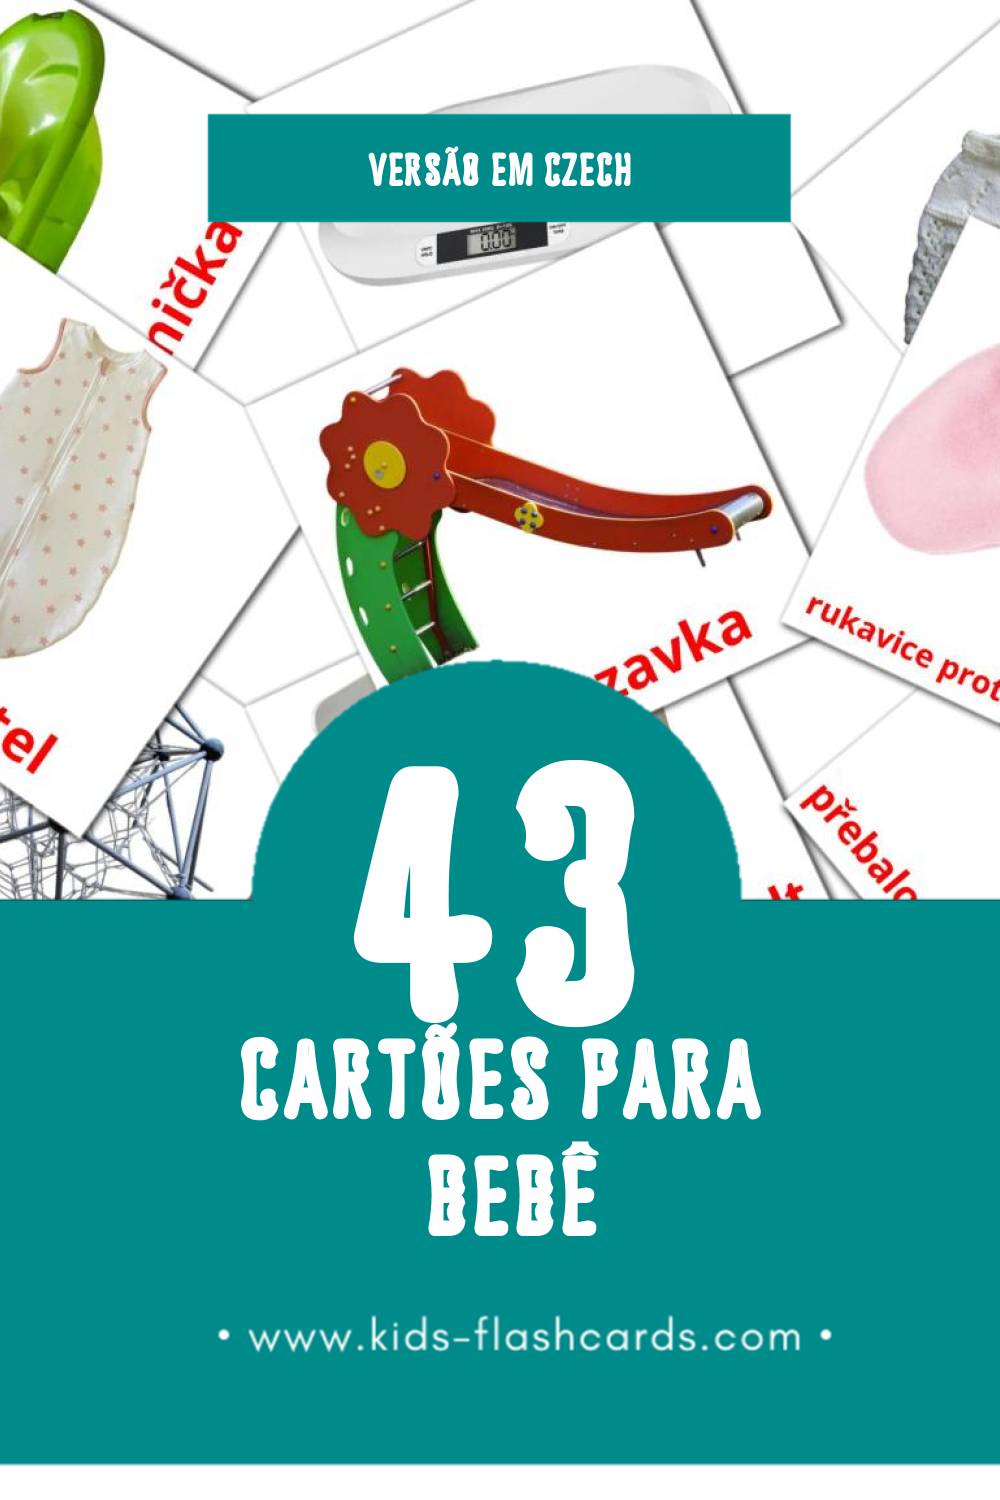 Flashcards de Dítě Visuais para Toddlers (43 cartões em Czech)